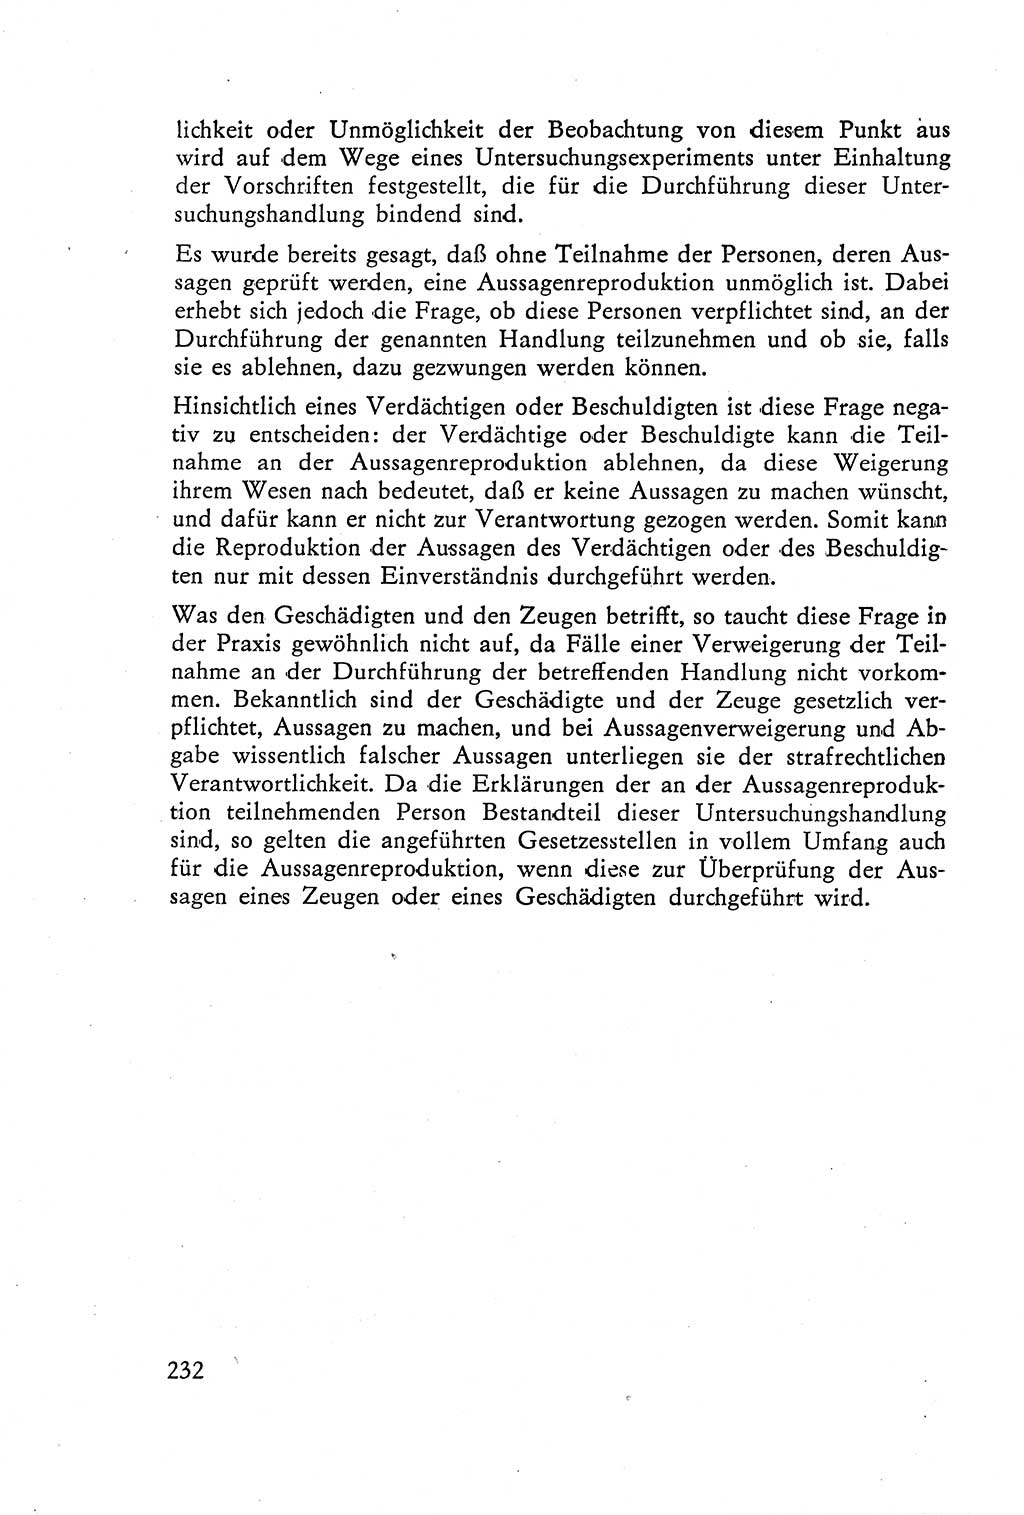 Die Vernehmung [Deutsche Demokratische Republik (DDR)] 1960, Seite 232 (Vern. DDR 1960, S. 232)